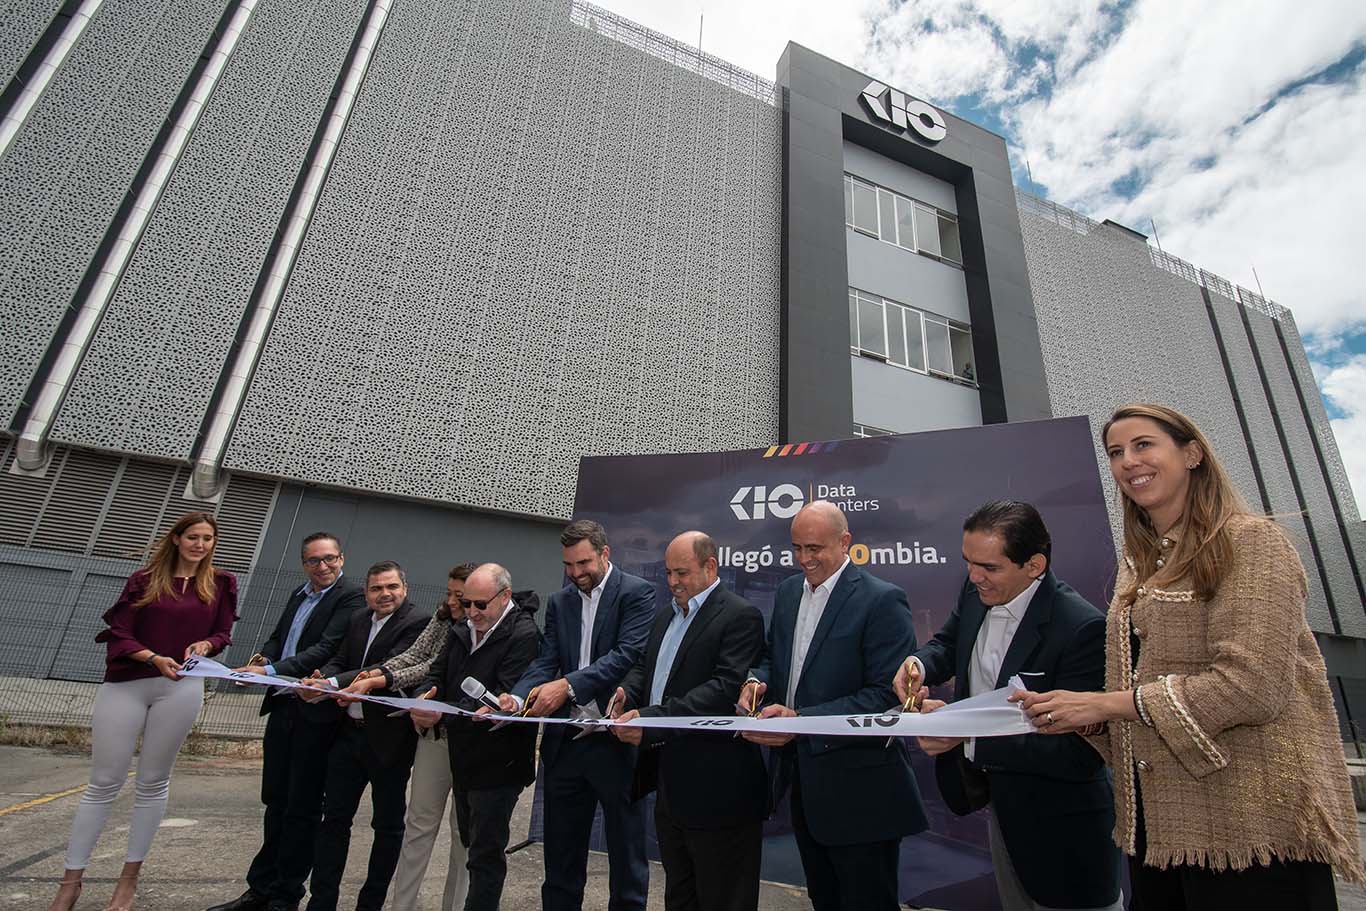 KIO anunció la apertura de nuevo data center en Colombia